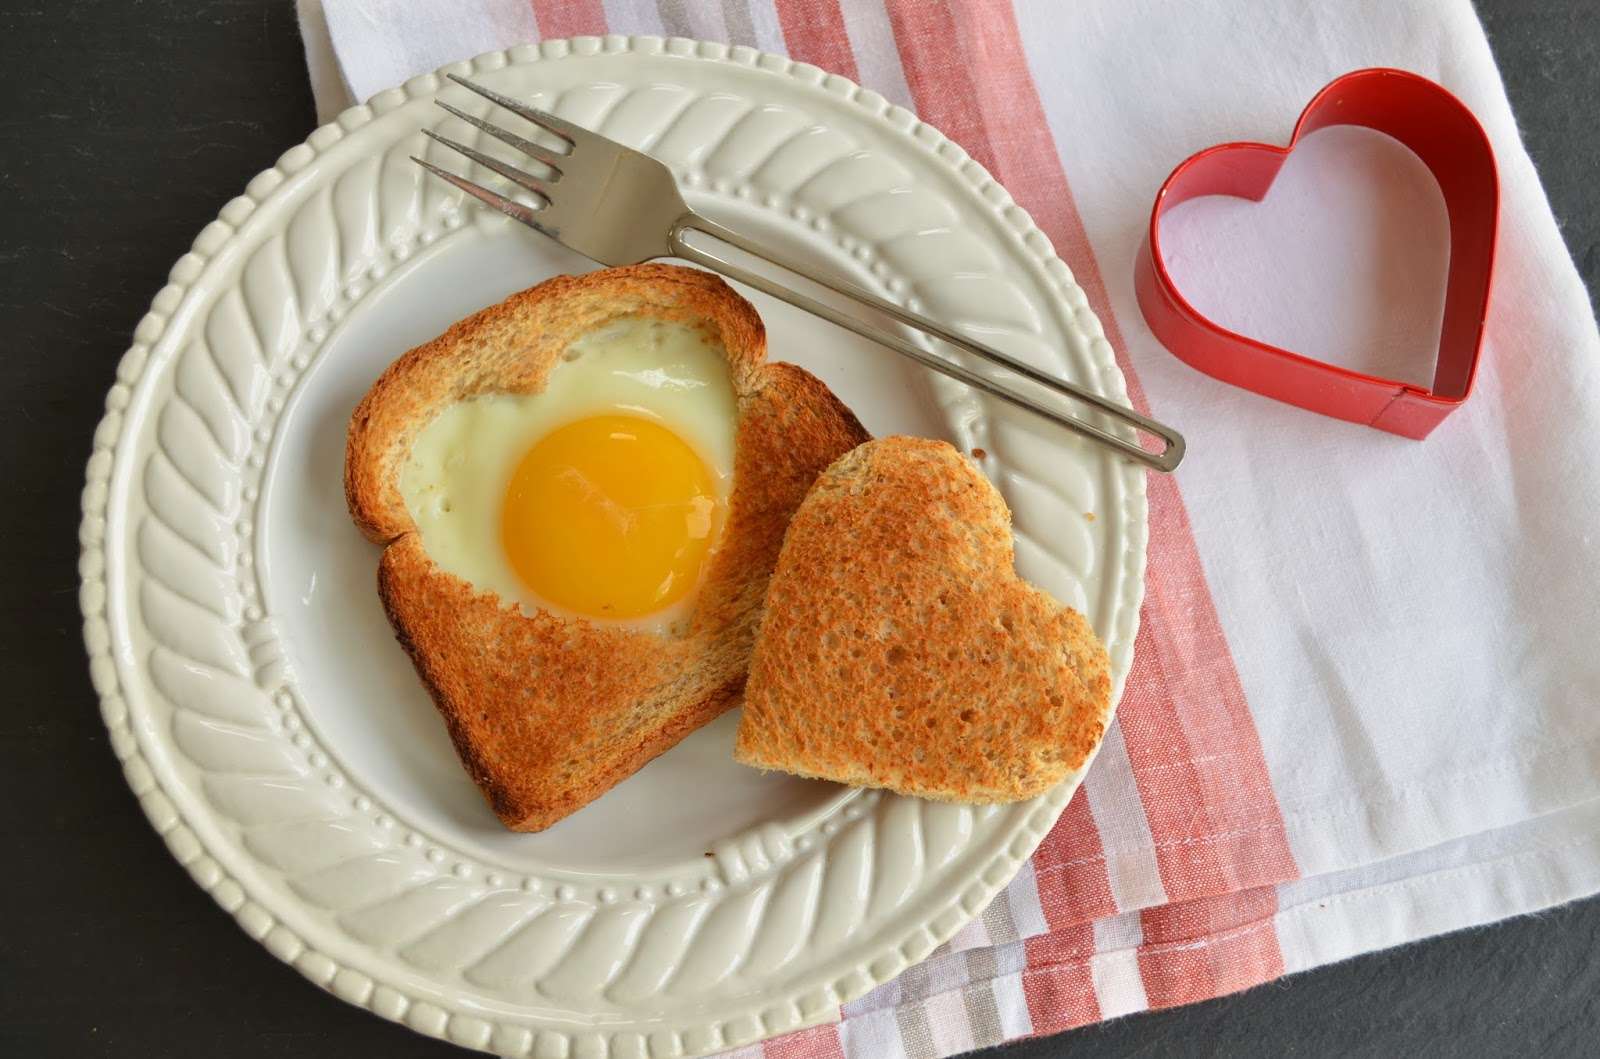 День Валентина 2018: оригинальные идеи блюд в форме сердца - фото 367511